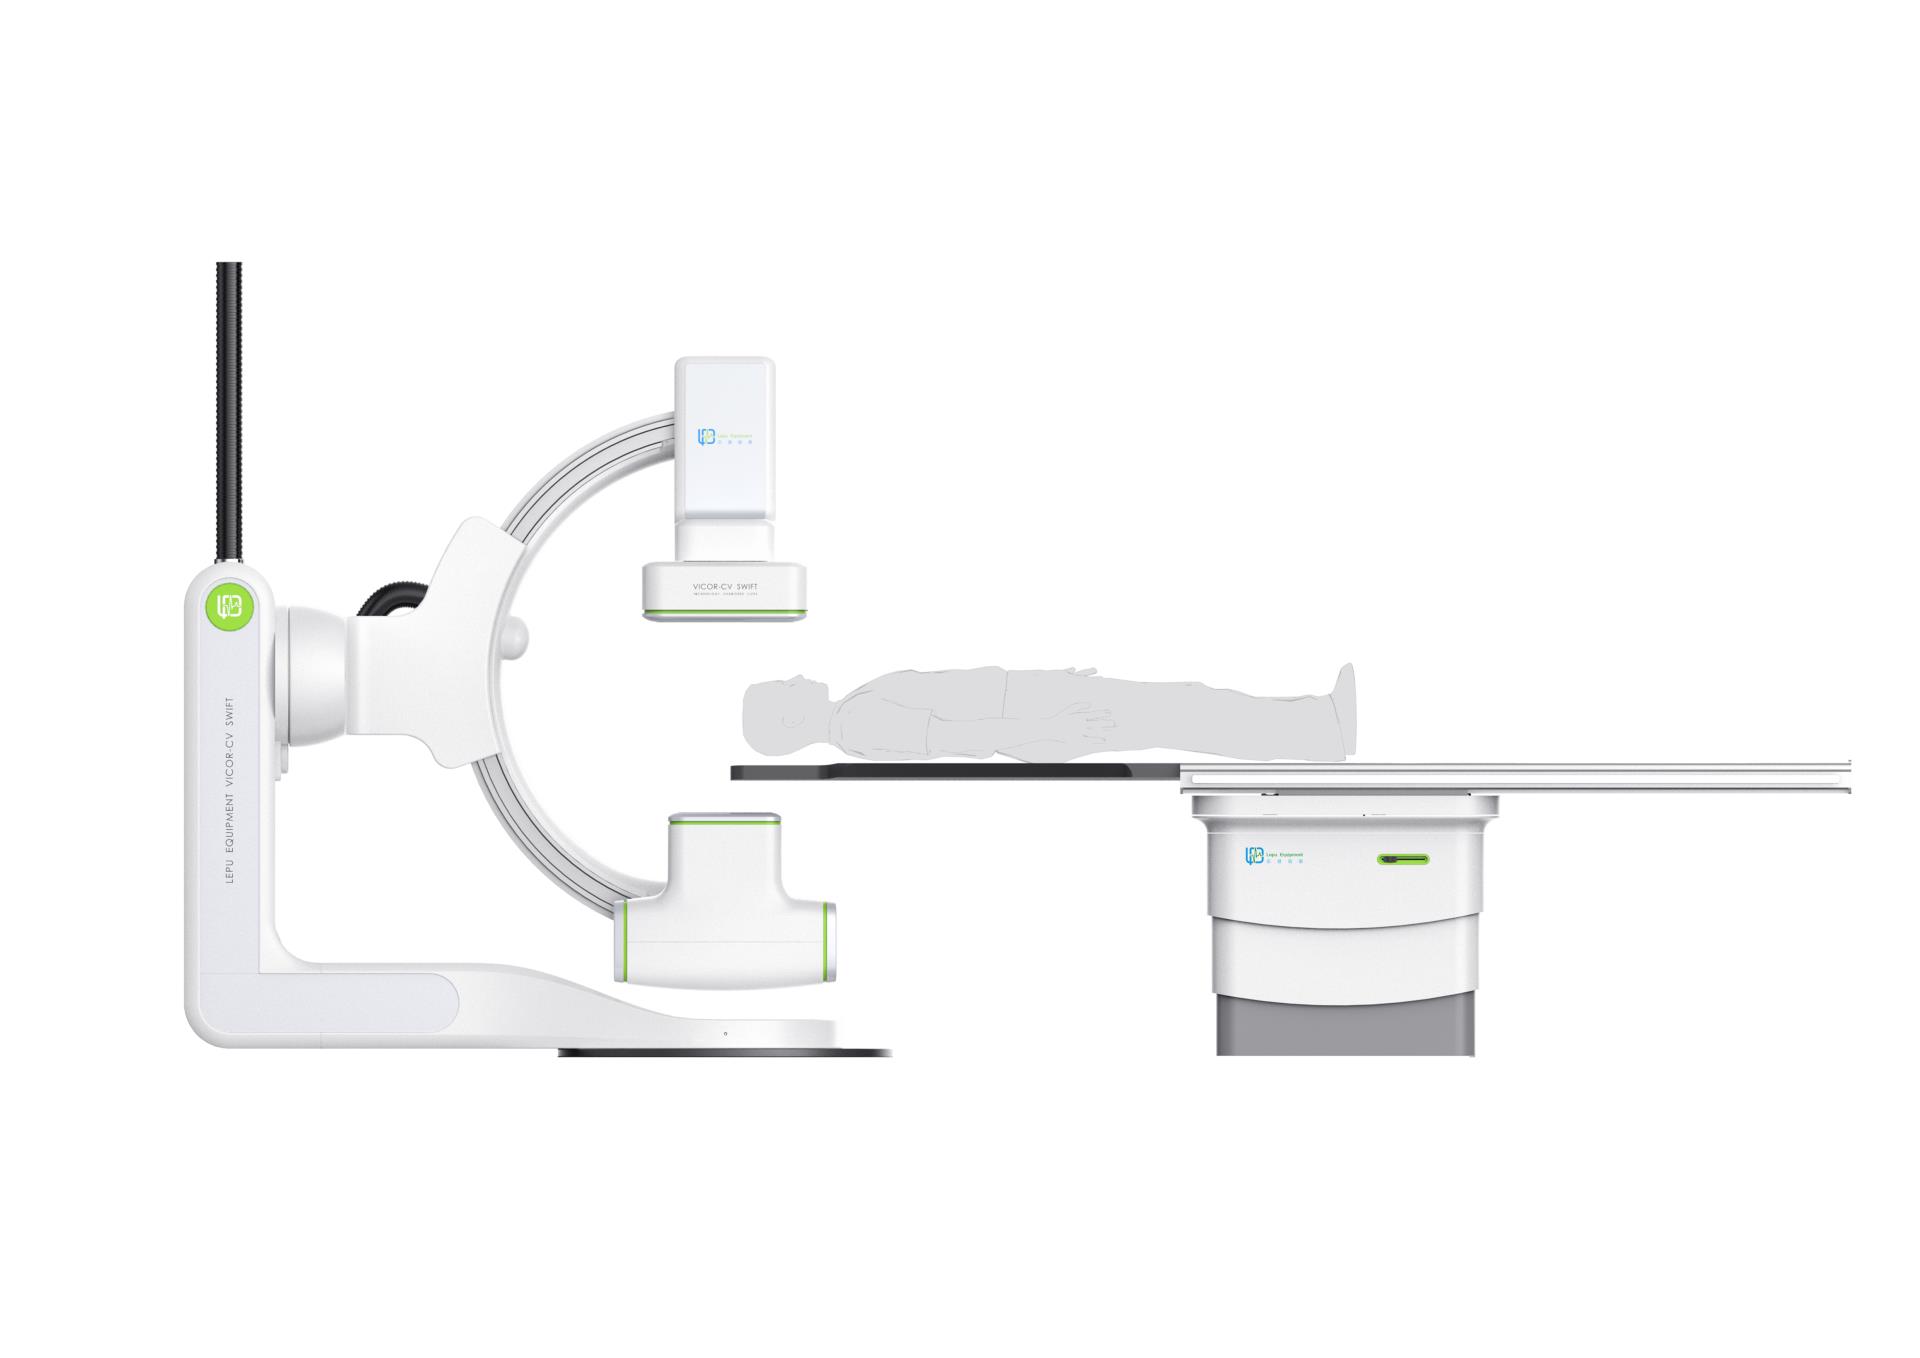 06 - 大尺寸產品圖片《樂普醫用血管造影X射線機》LEPU AngiographicX-raySystem.jpg